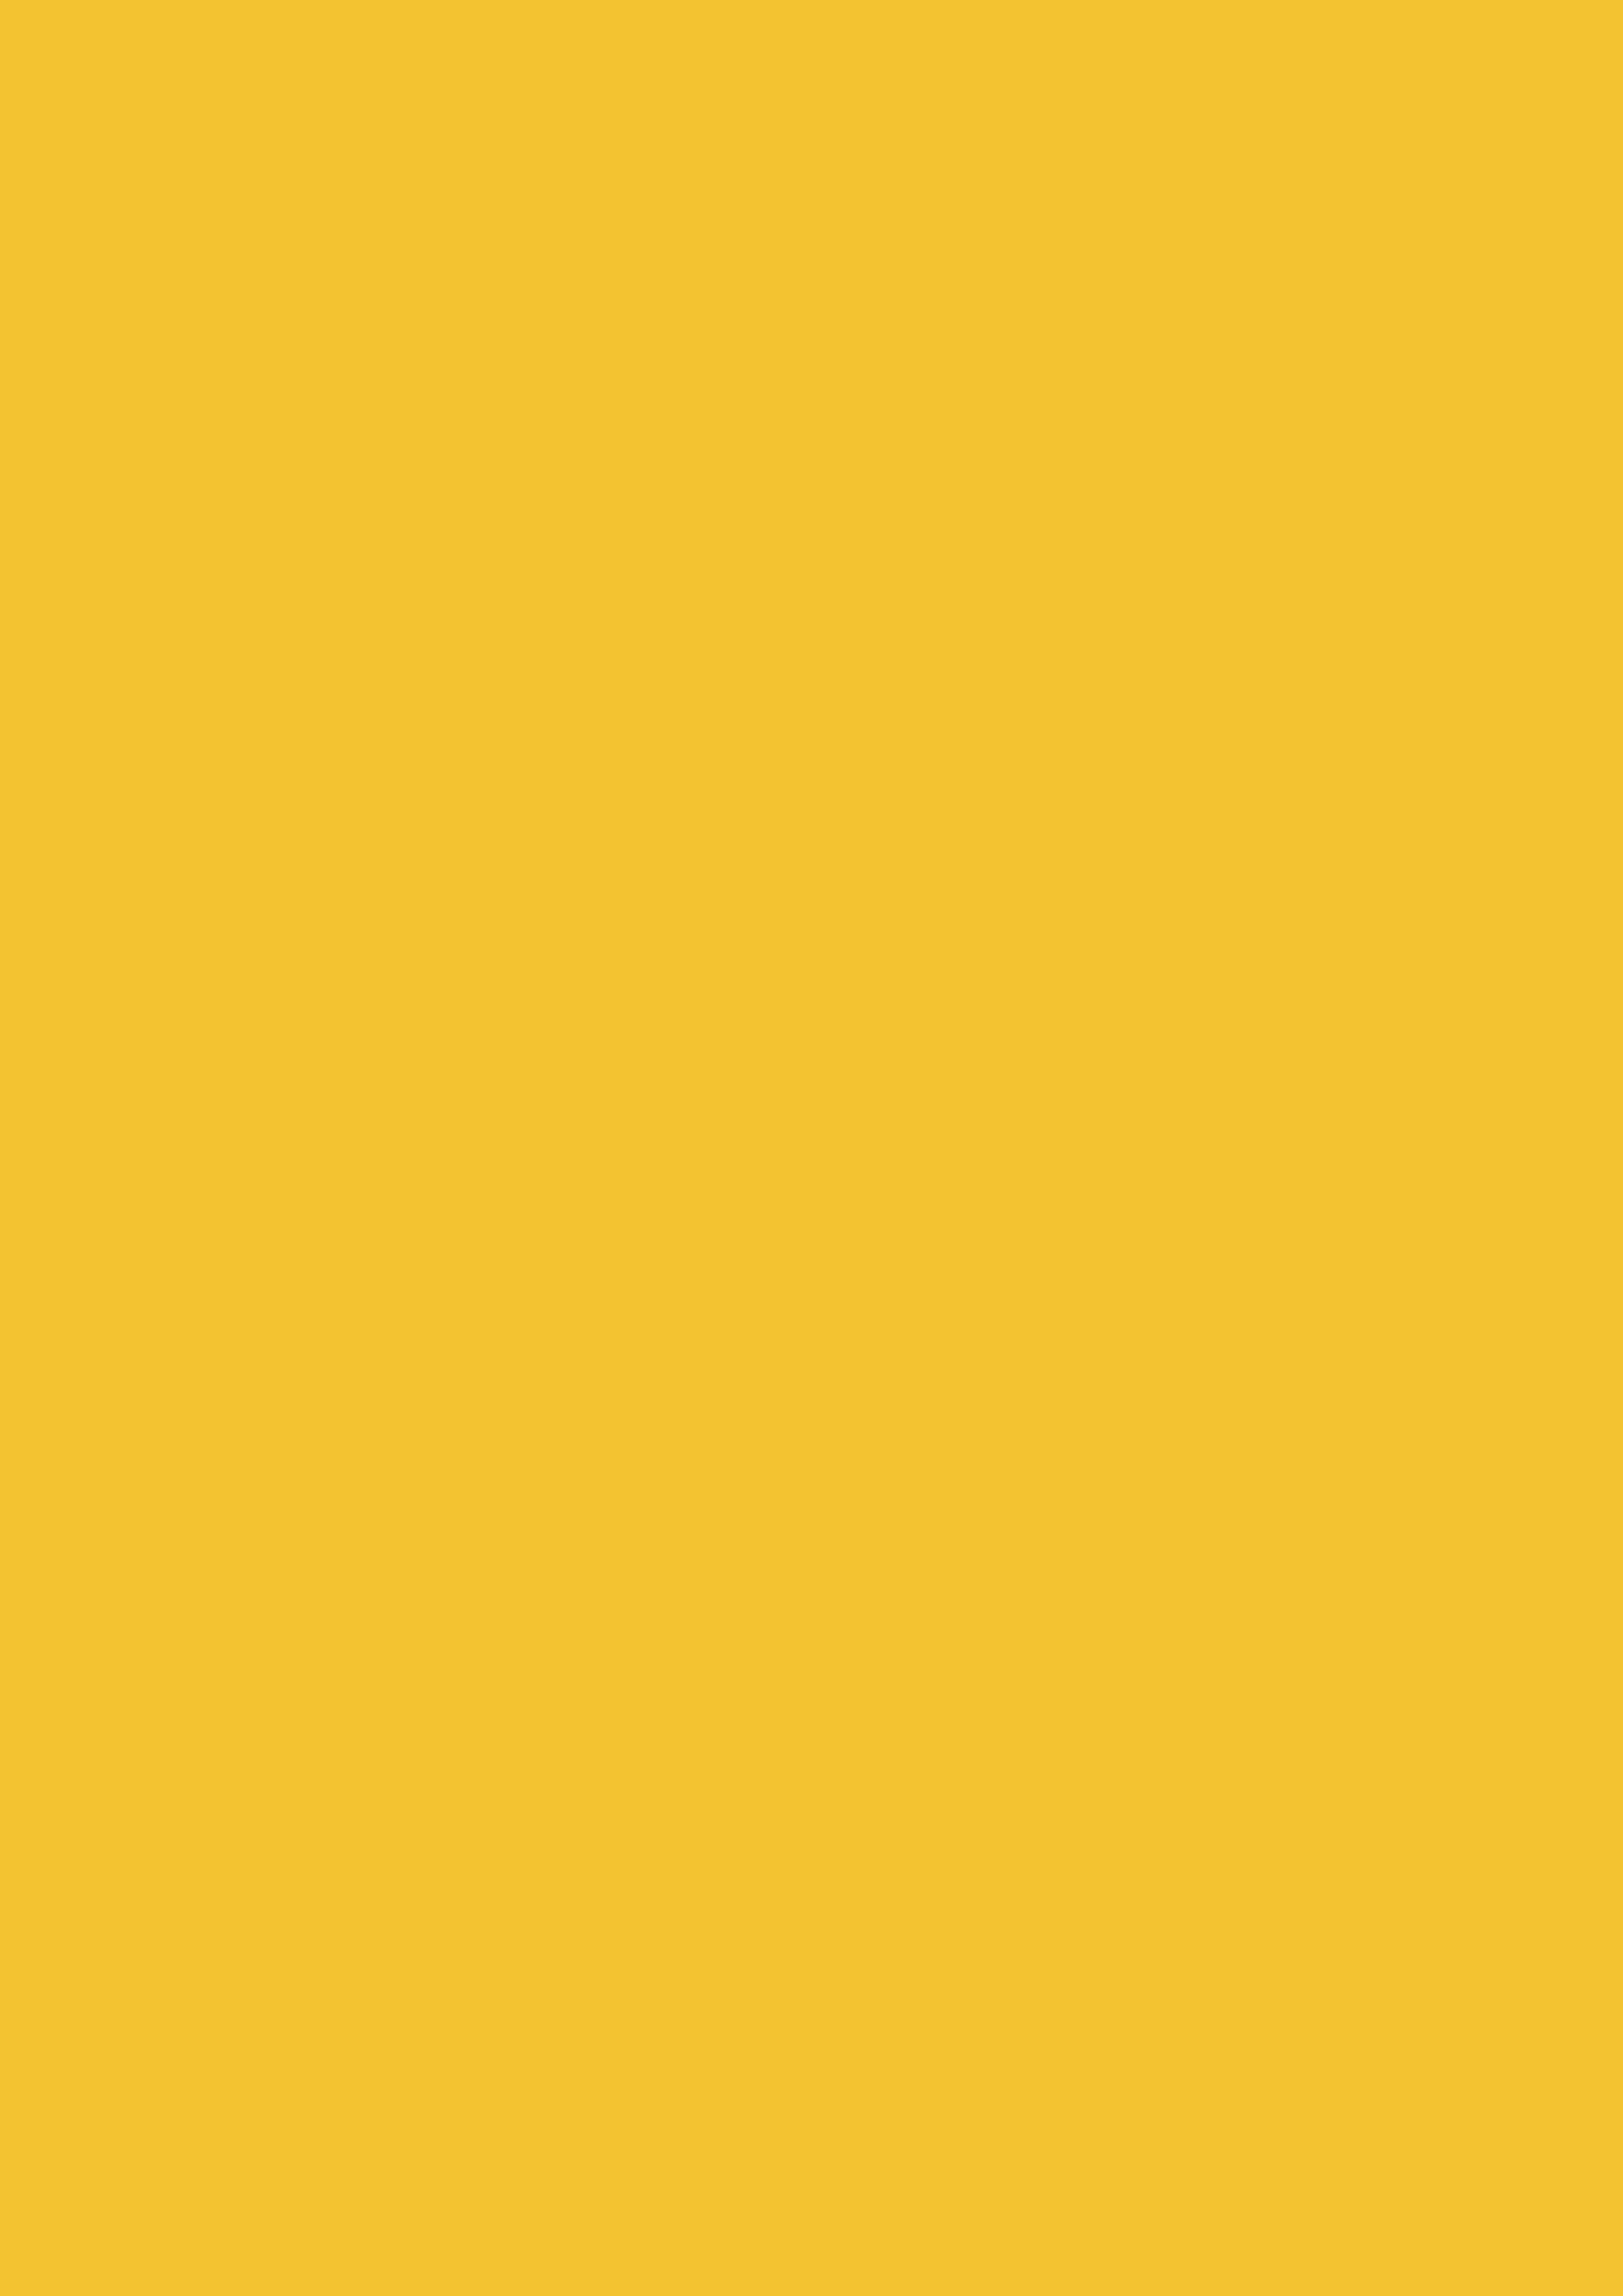 2480x3508 Saffron Solid Color Background